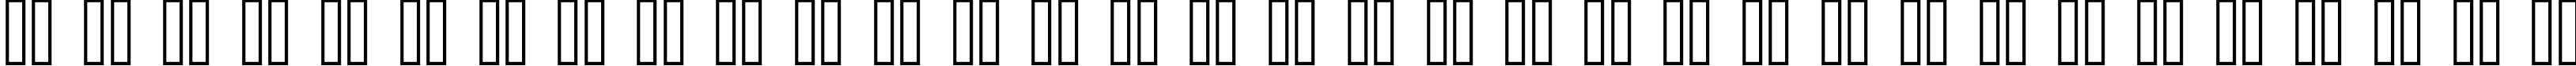 Пример написания русского алфавита шрифтом copy 08_56